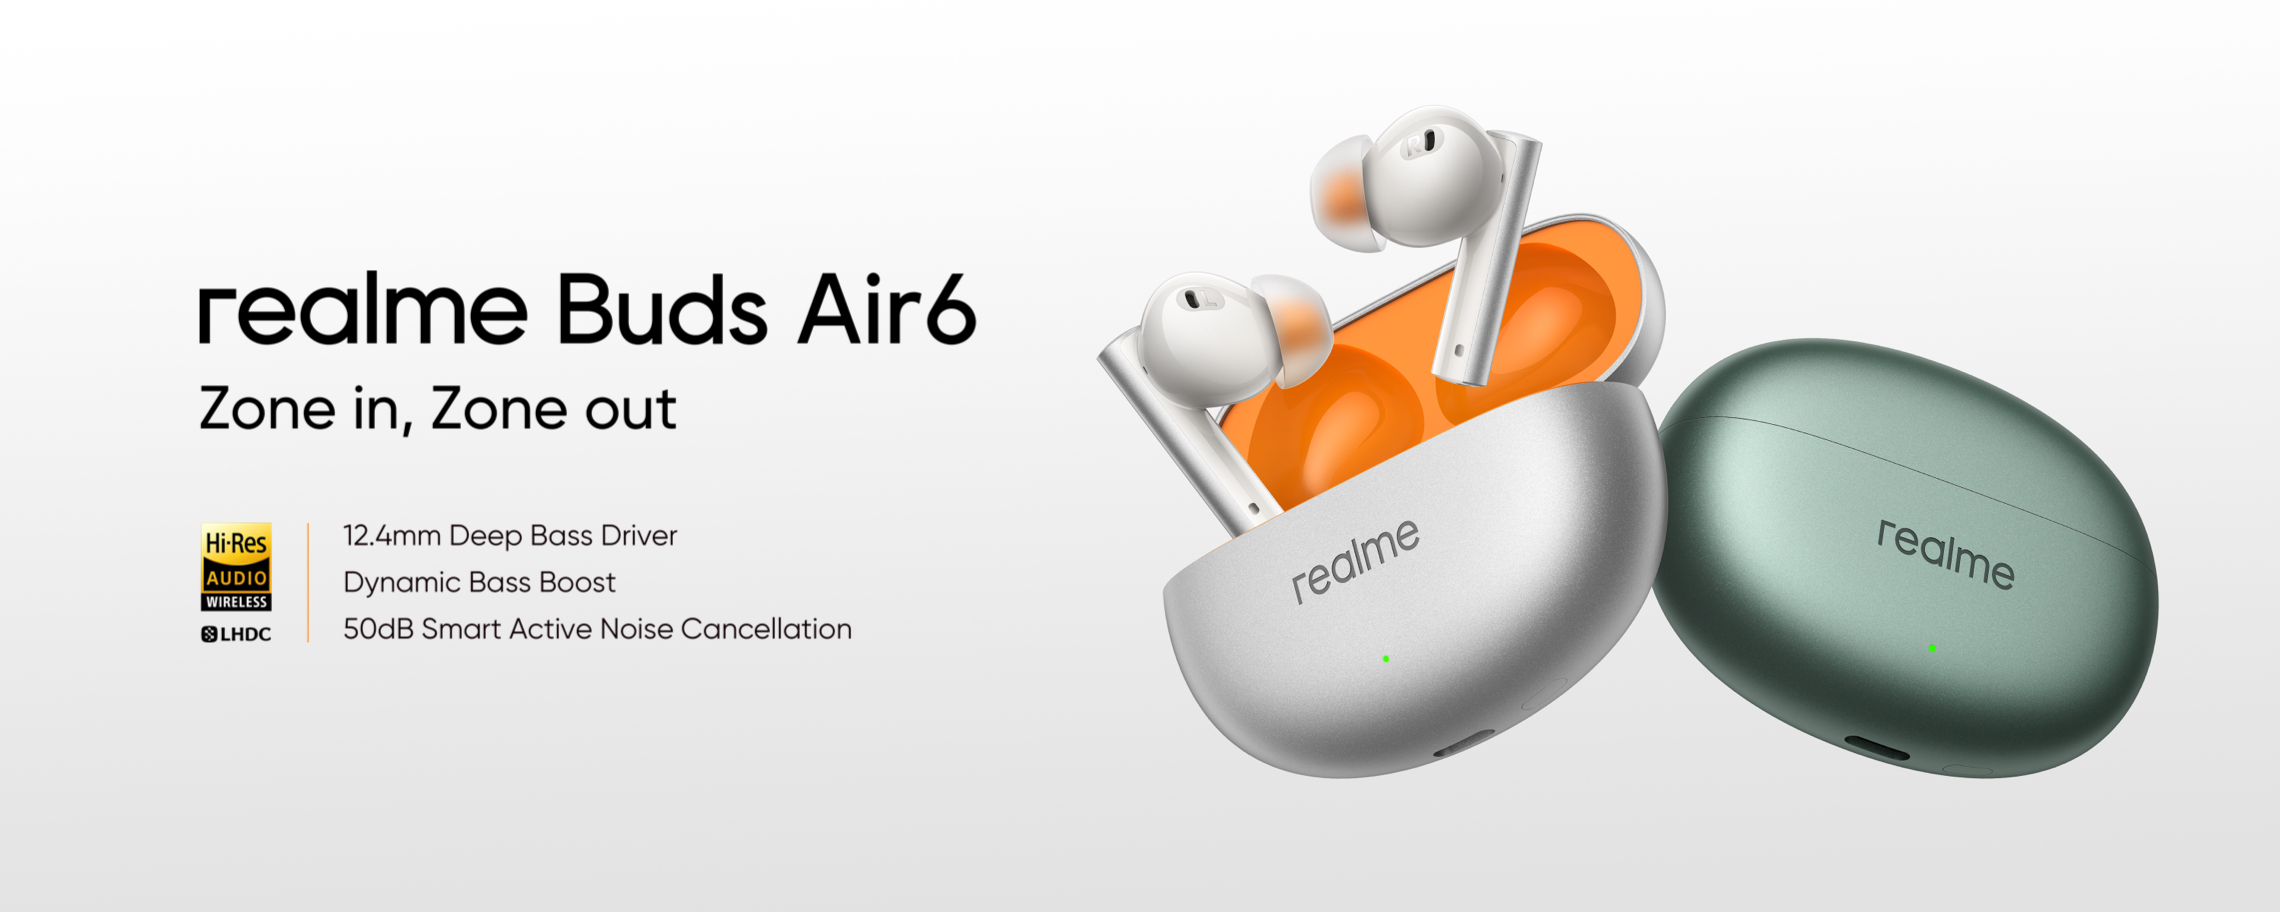 Realme Buds Air 6 med ANC, LHDC-understøttelse, op til 40 timers batterilevetid og en pris på $39 er debuteret uden for Kina